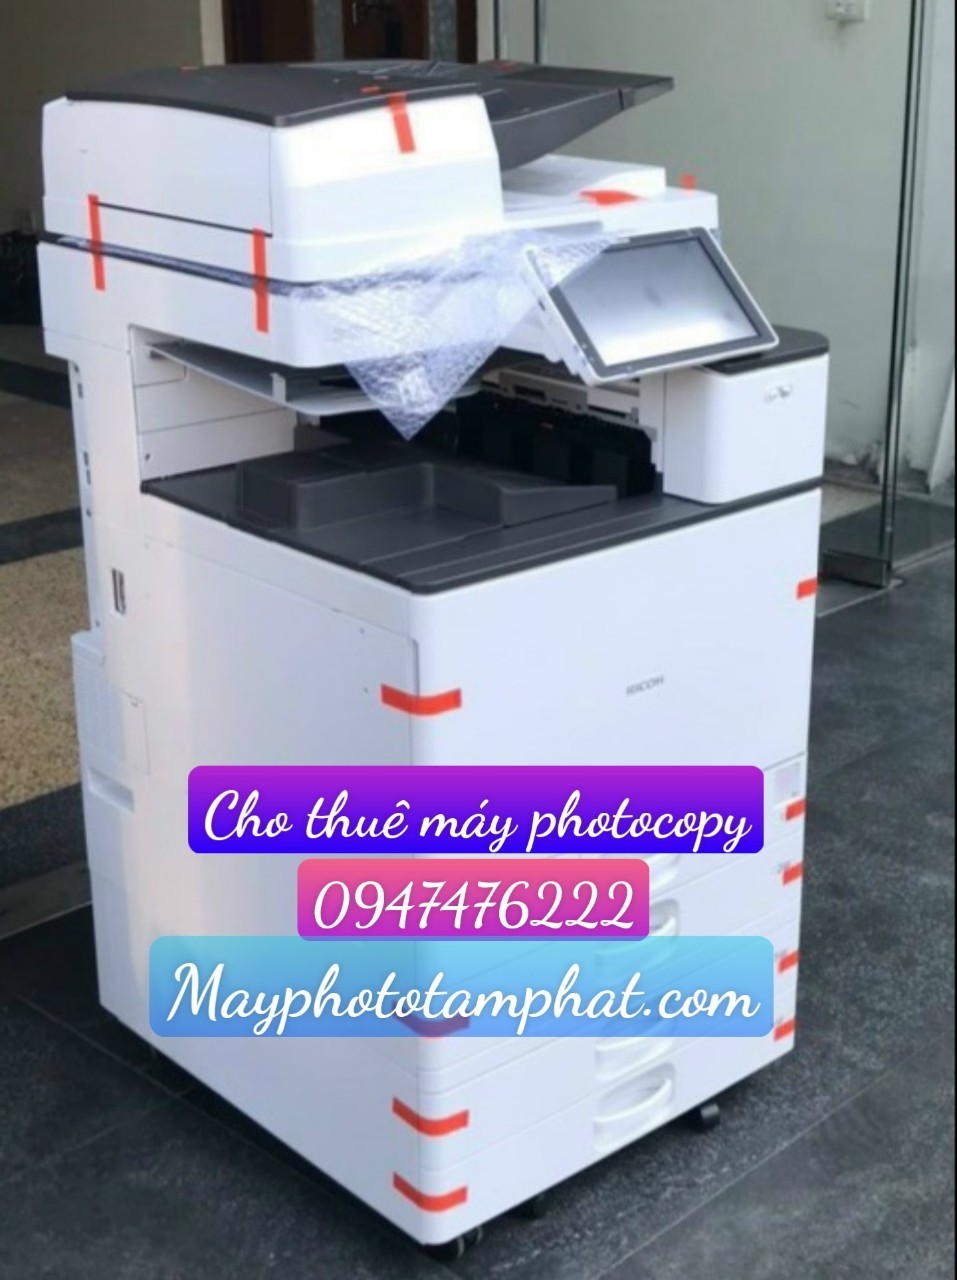 Cho thuê máy photocopy ngắn hạn giá rẻ tại Hà Nội